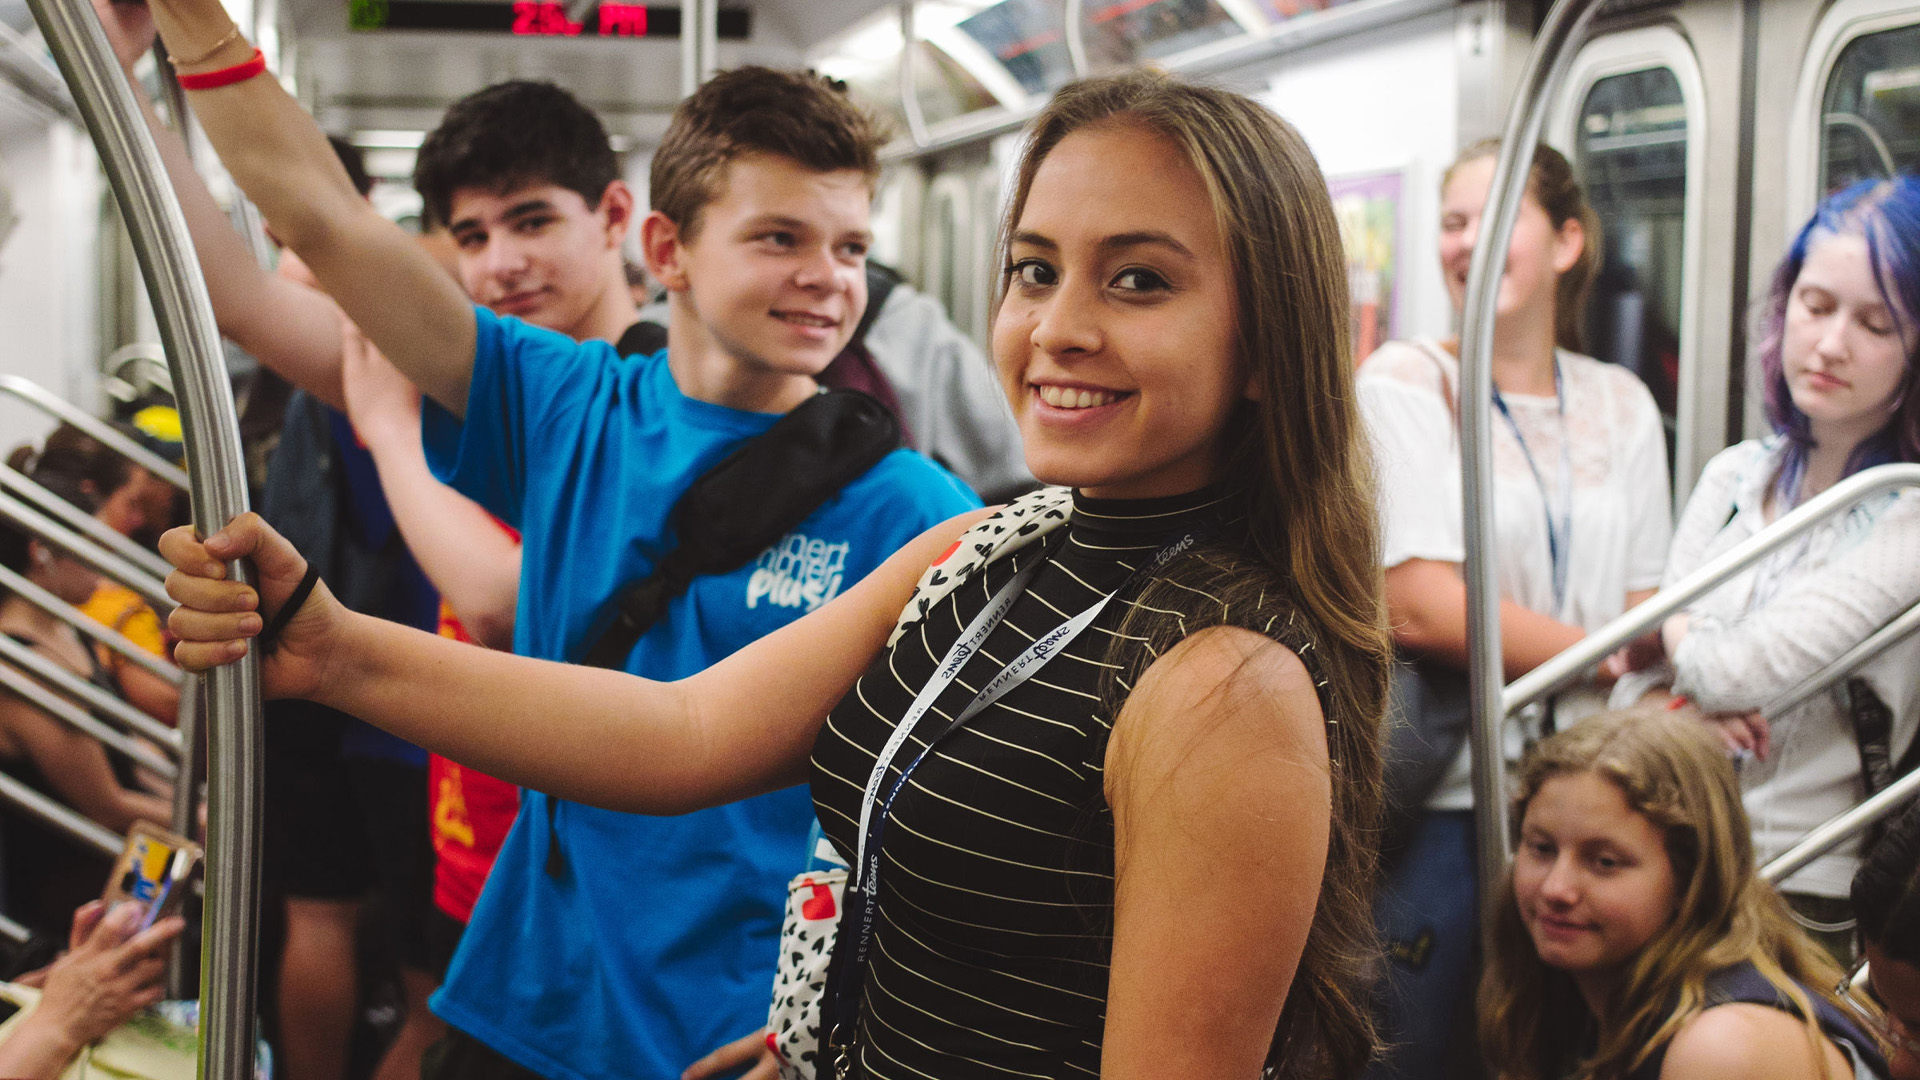 Rennert Teens Subway